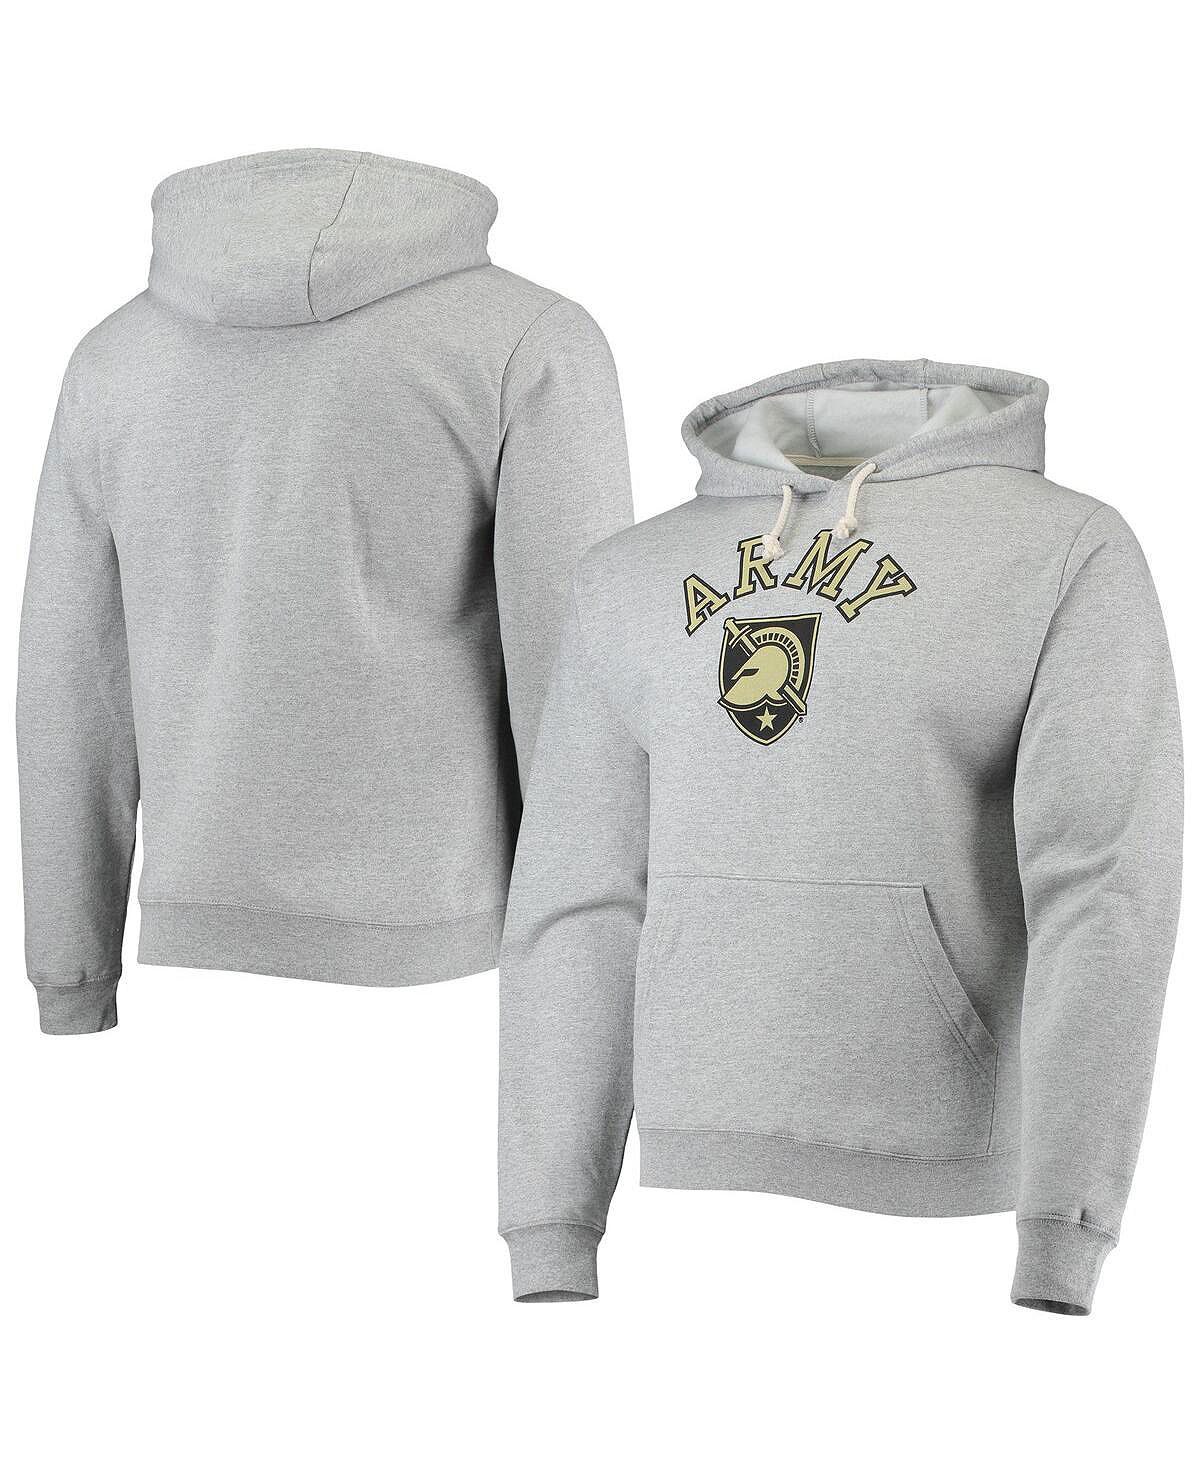 Мужской флисовый пуловер с капюшоном с капюшоном, серый армейский черный Knights Seal Neuvo Essential League Collegiate Wear